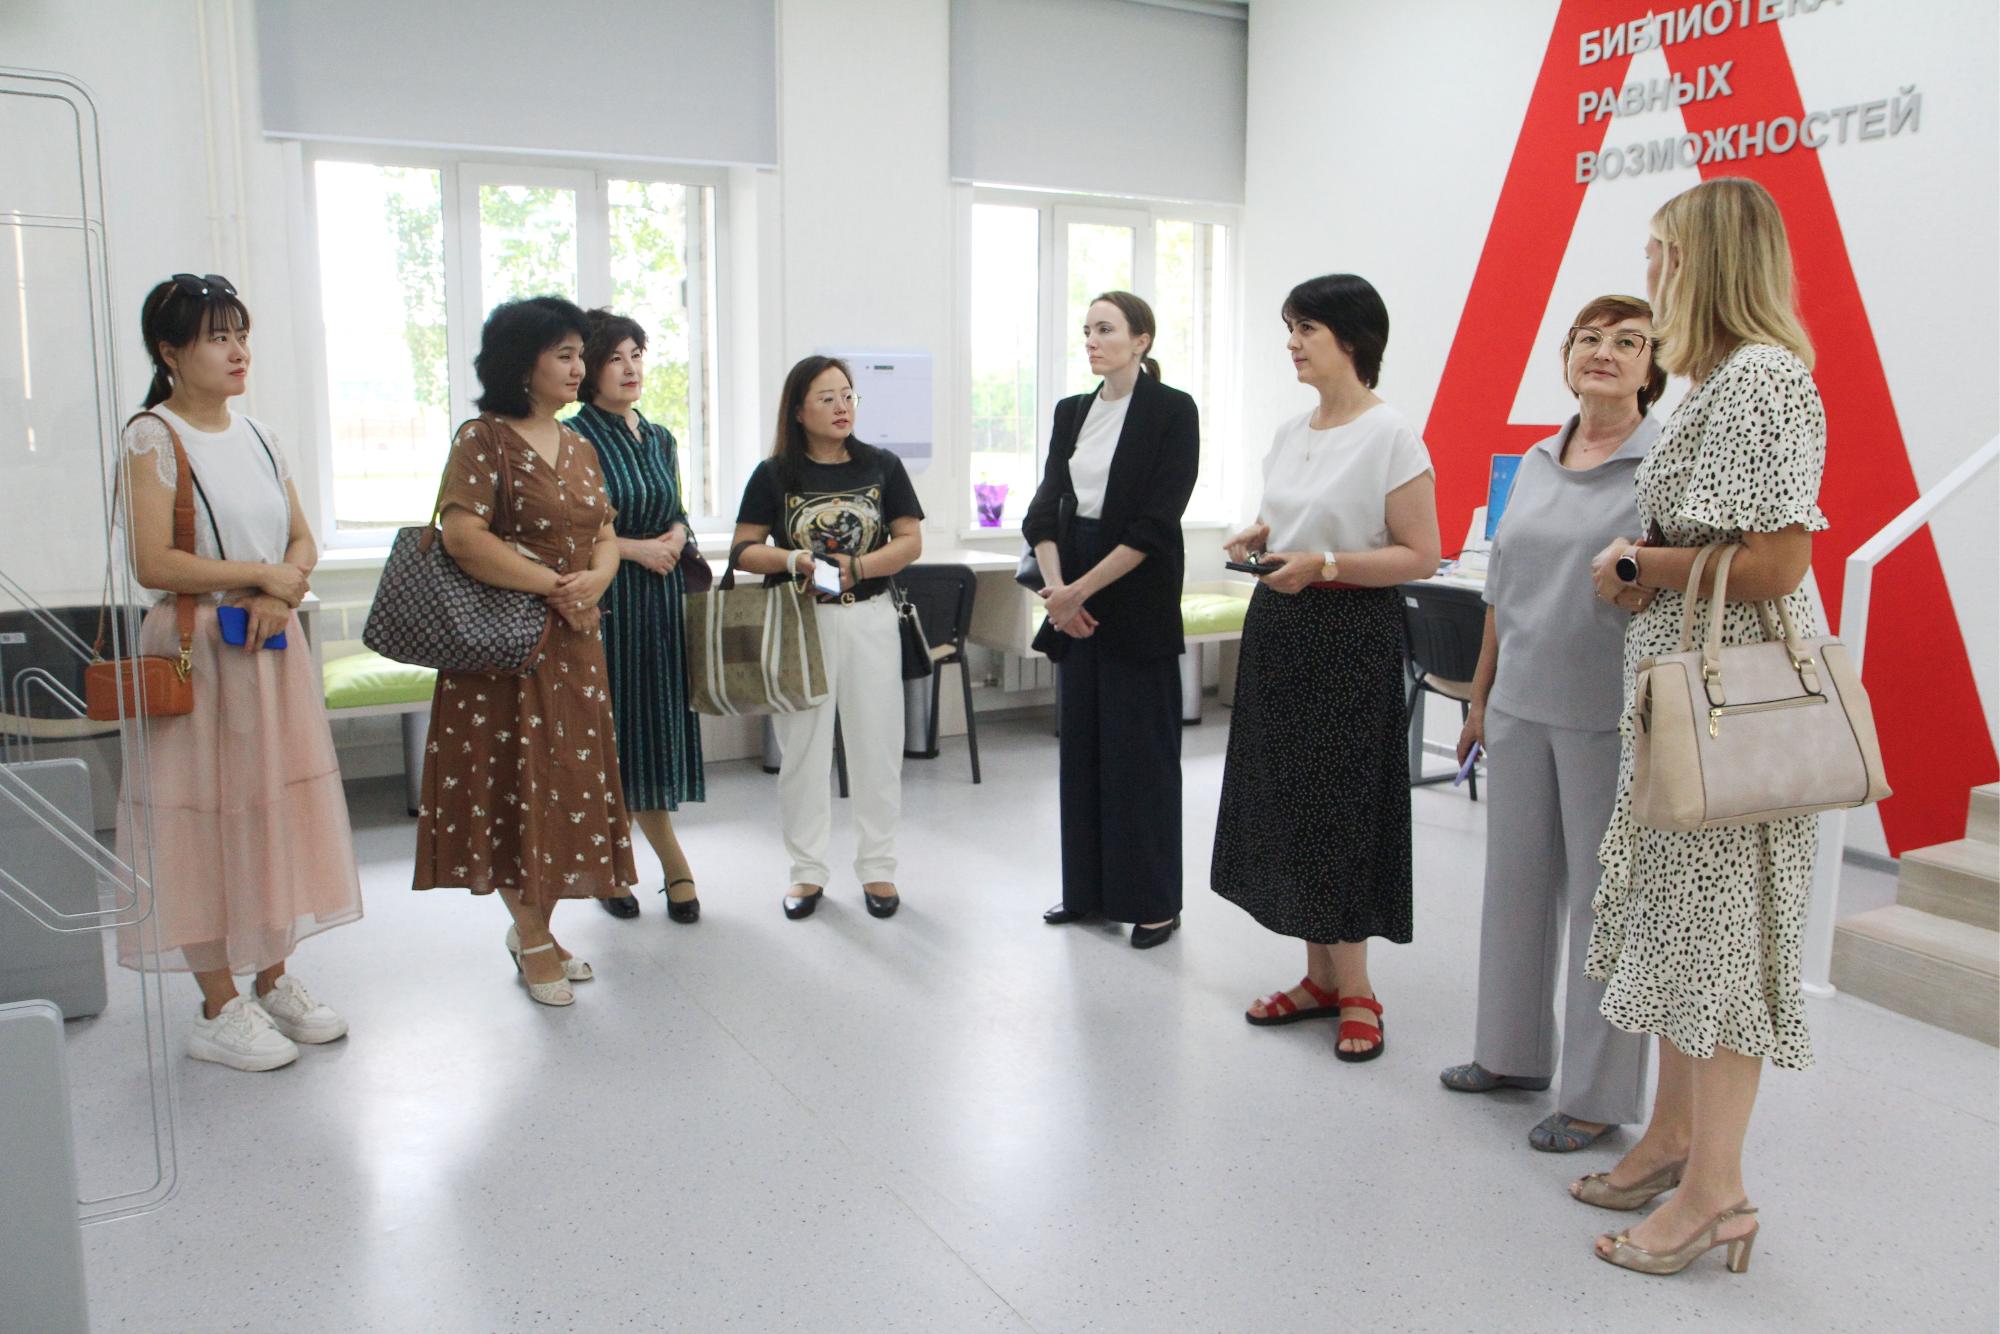 ФОТО к новости: Совместные образовательные программы на базе успешного партнёрства. НГПУ посетила делегация из Синьцзяна